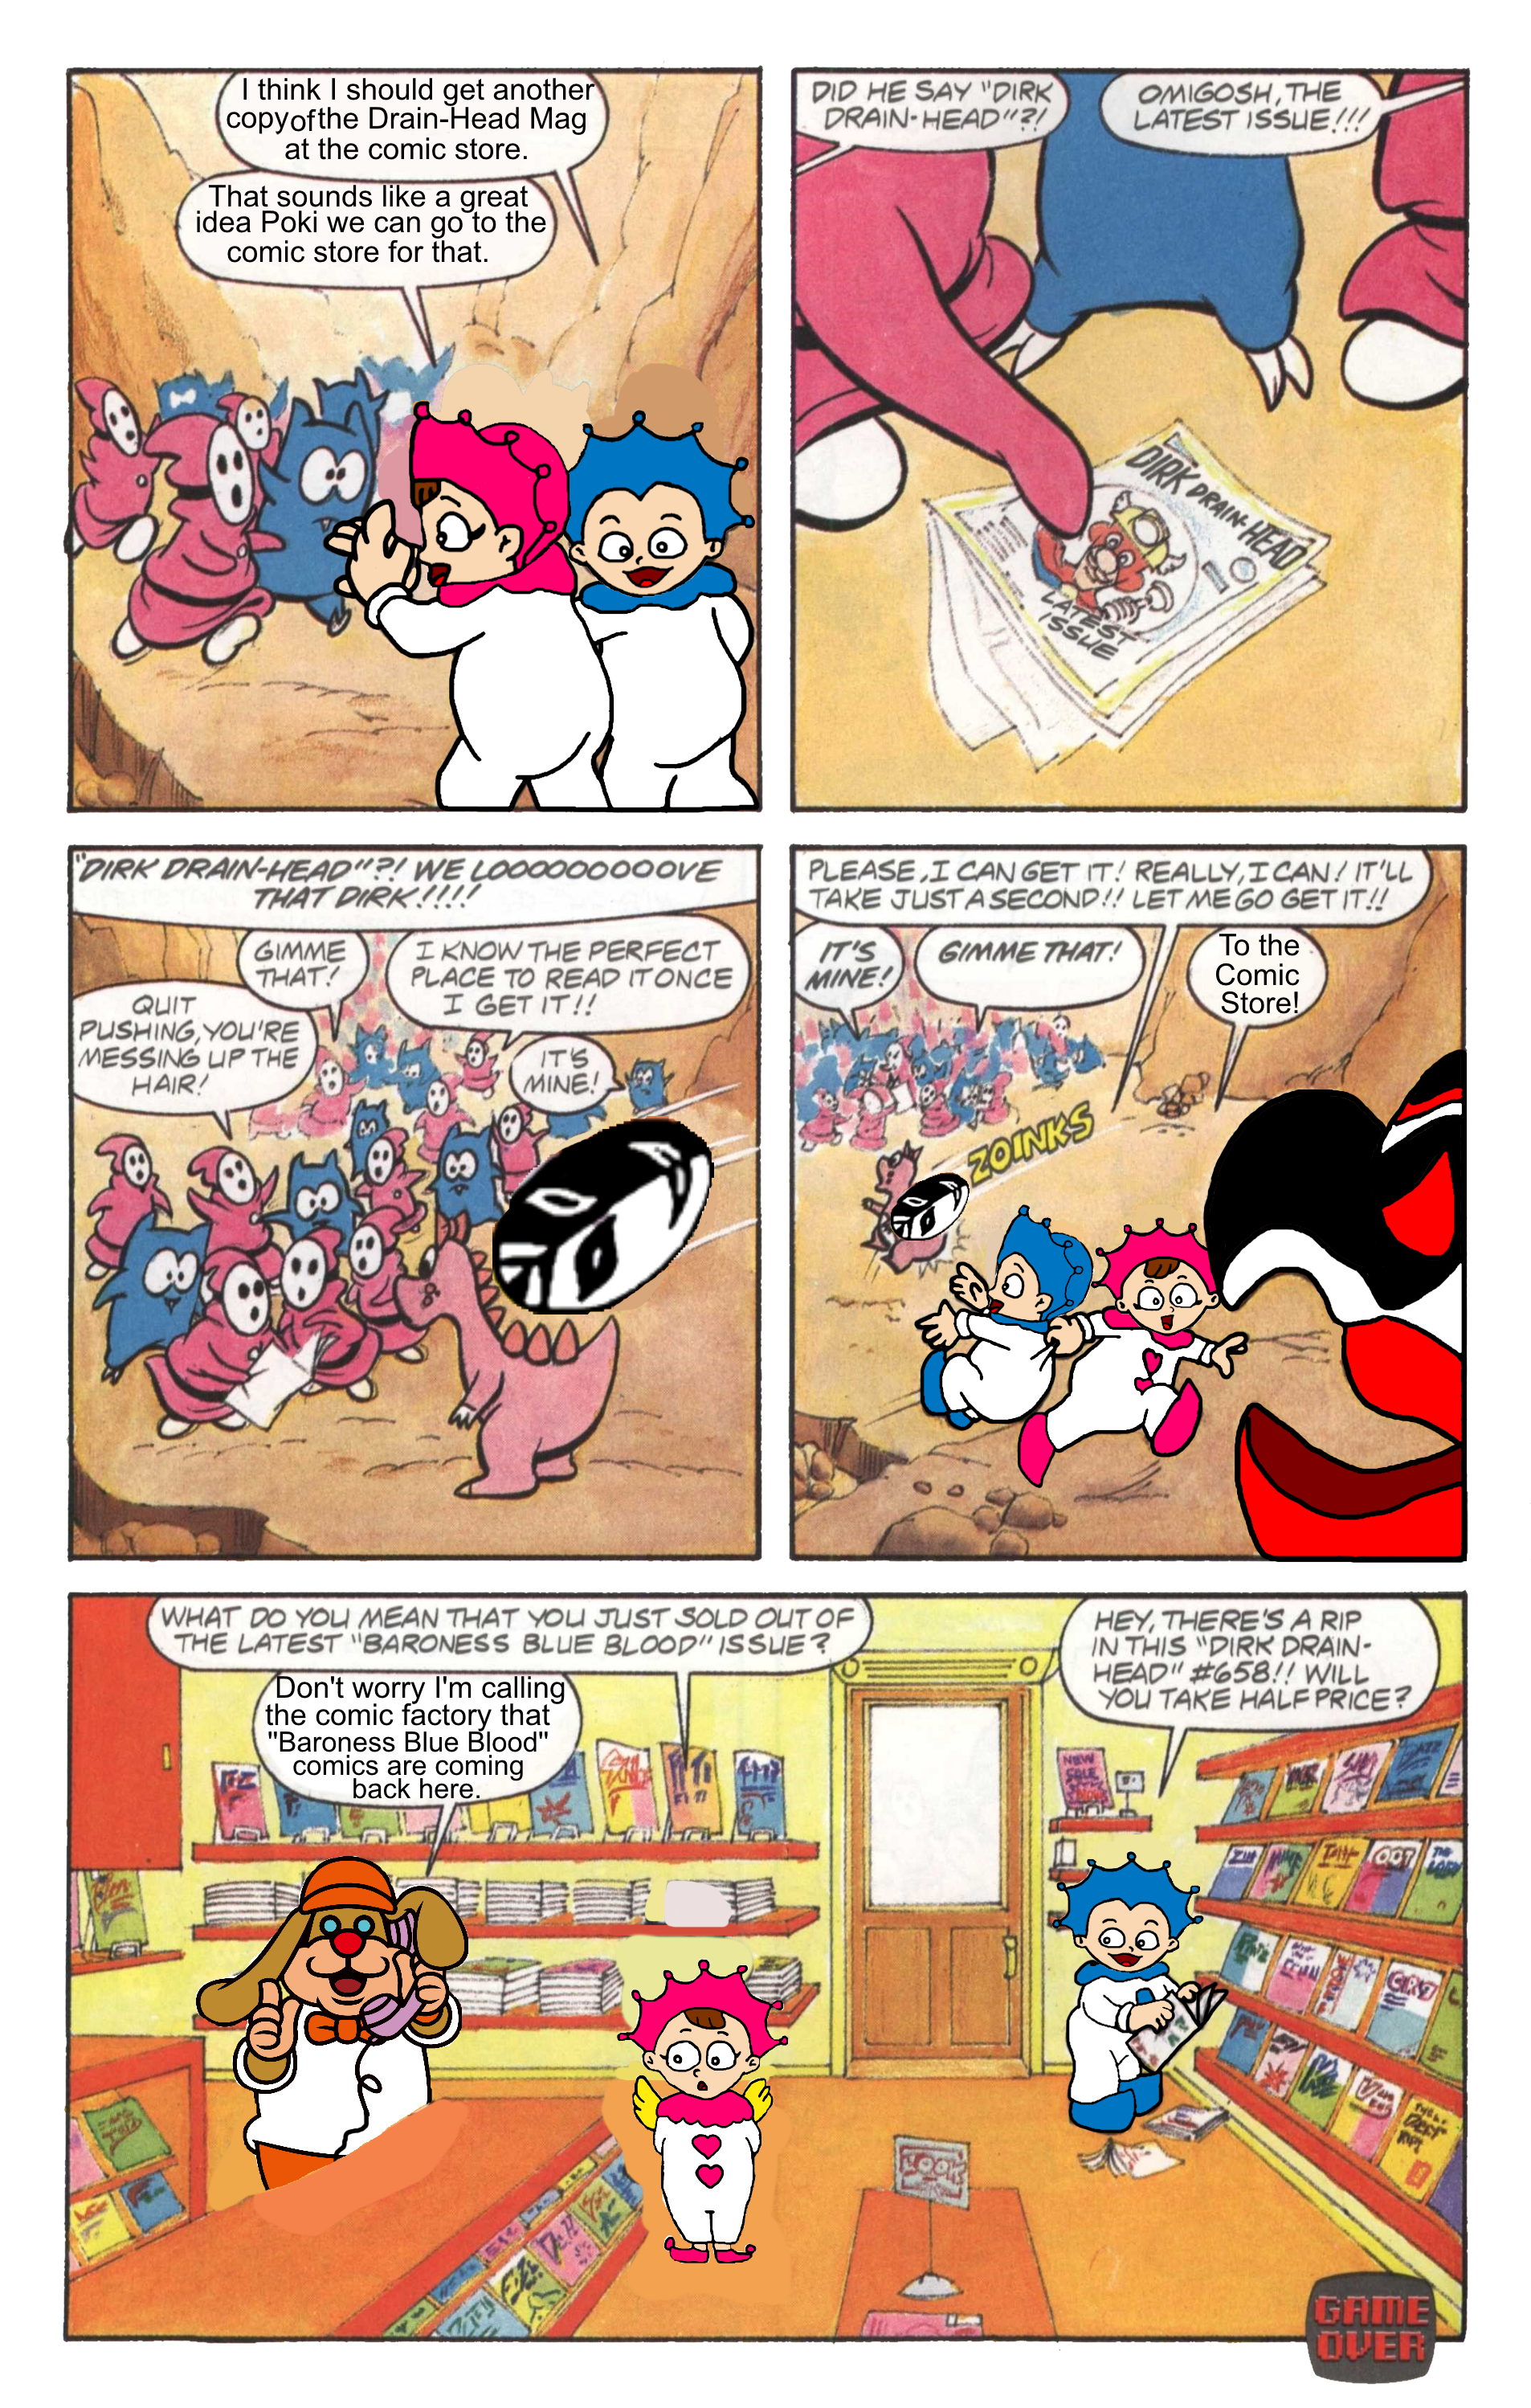 Poki's comic story 1 by Ruensor on DeviantArt